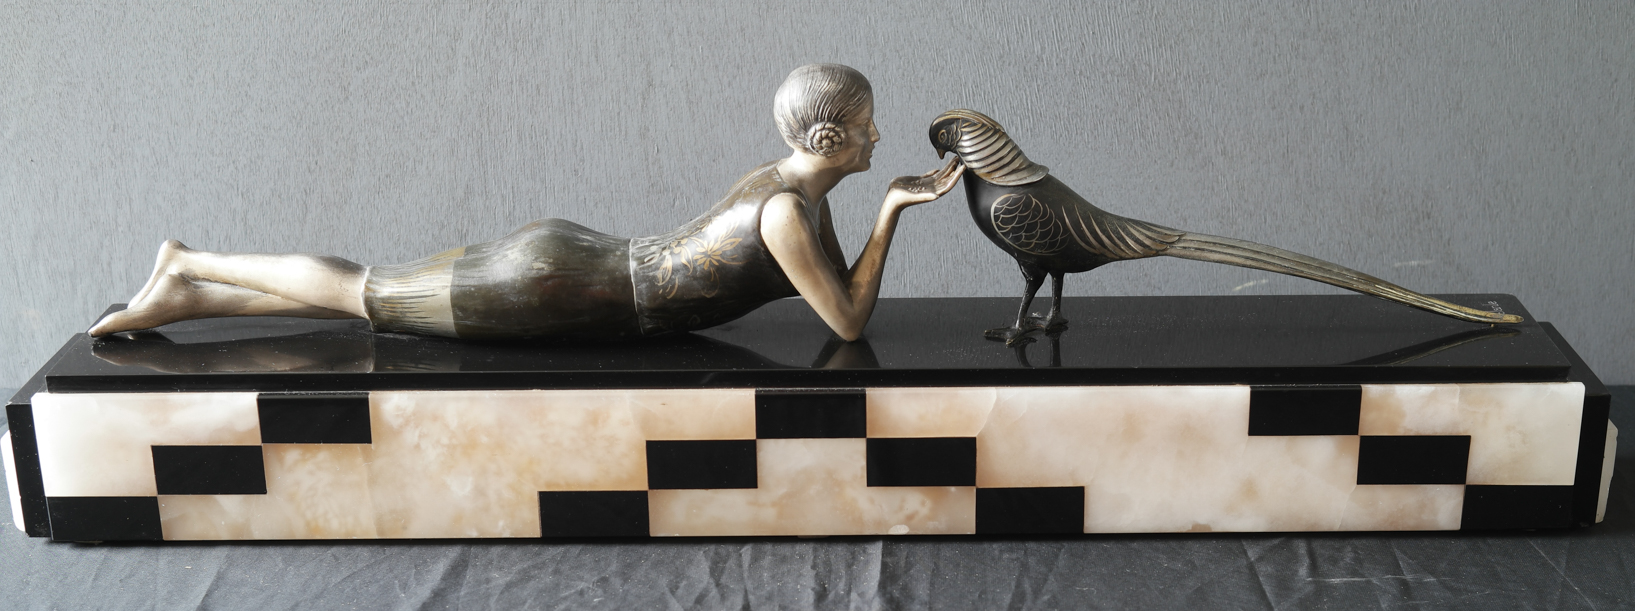 girl feeding bird sculpture kl 1